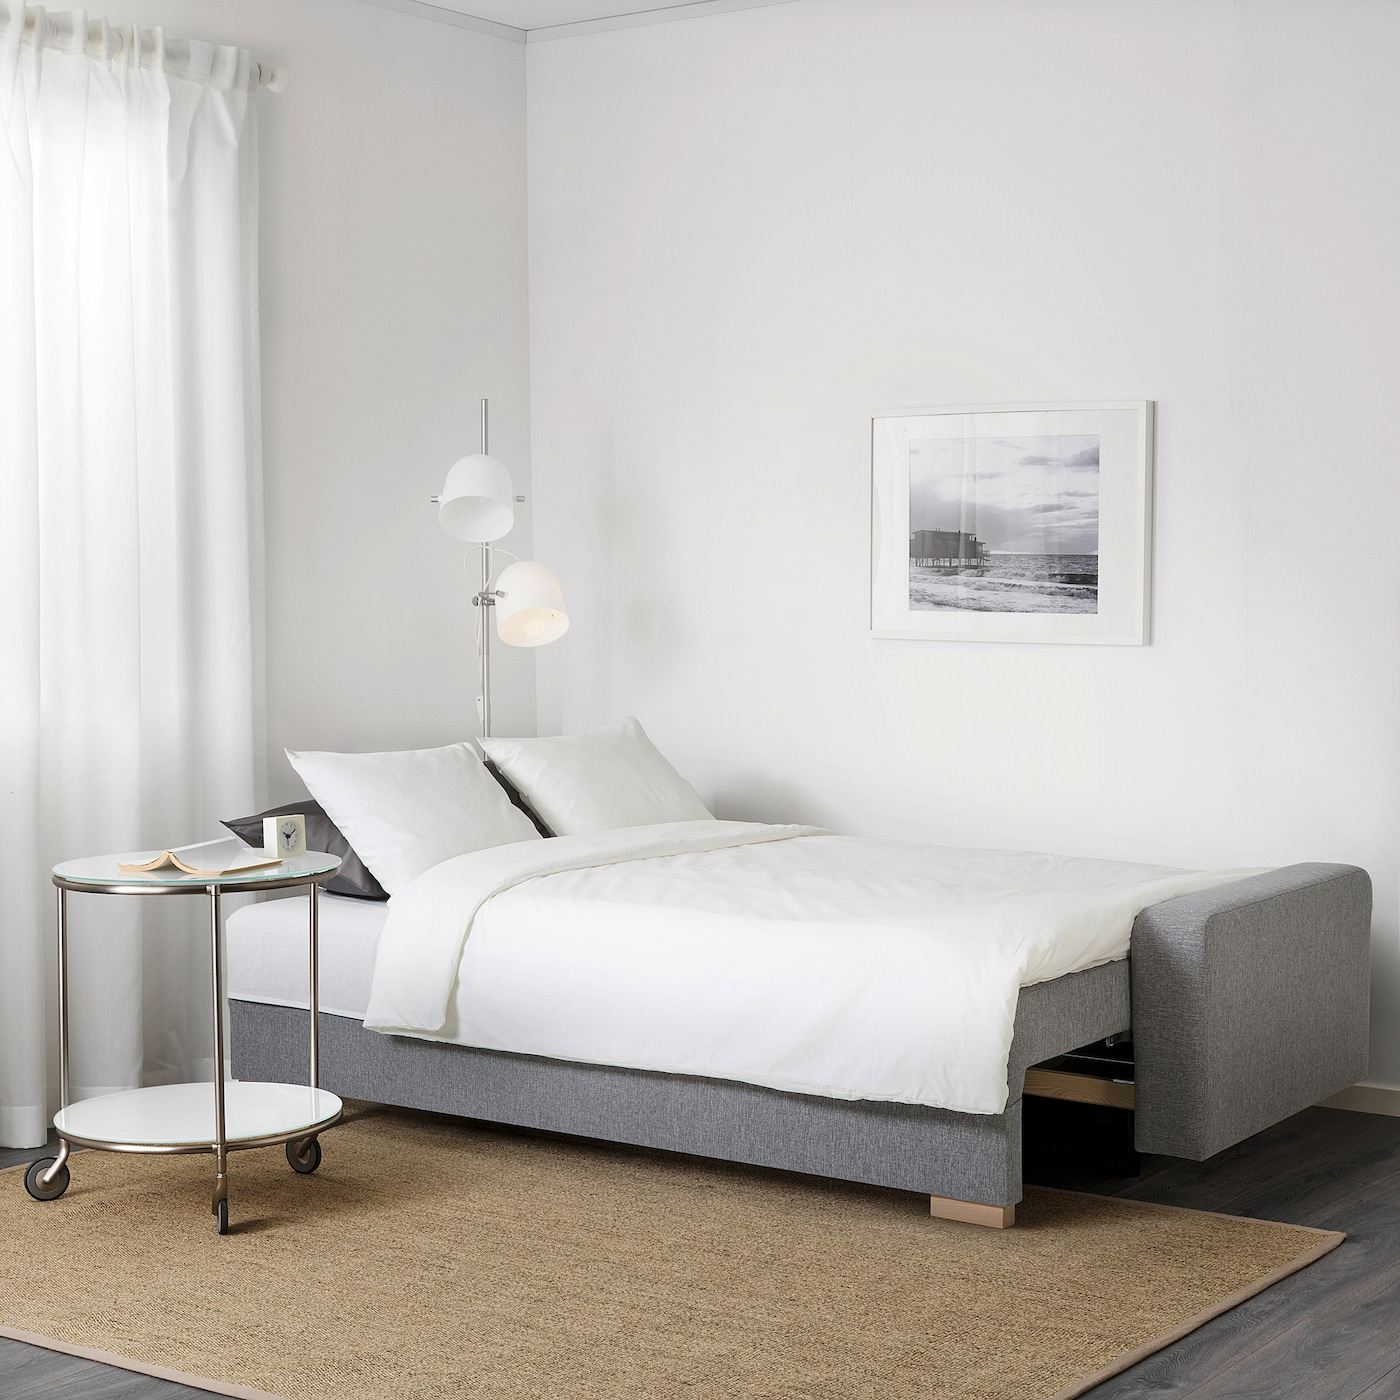 Grälviken 3-Seat Sofa-Bed - Grey dedans Ikea Gralviken